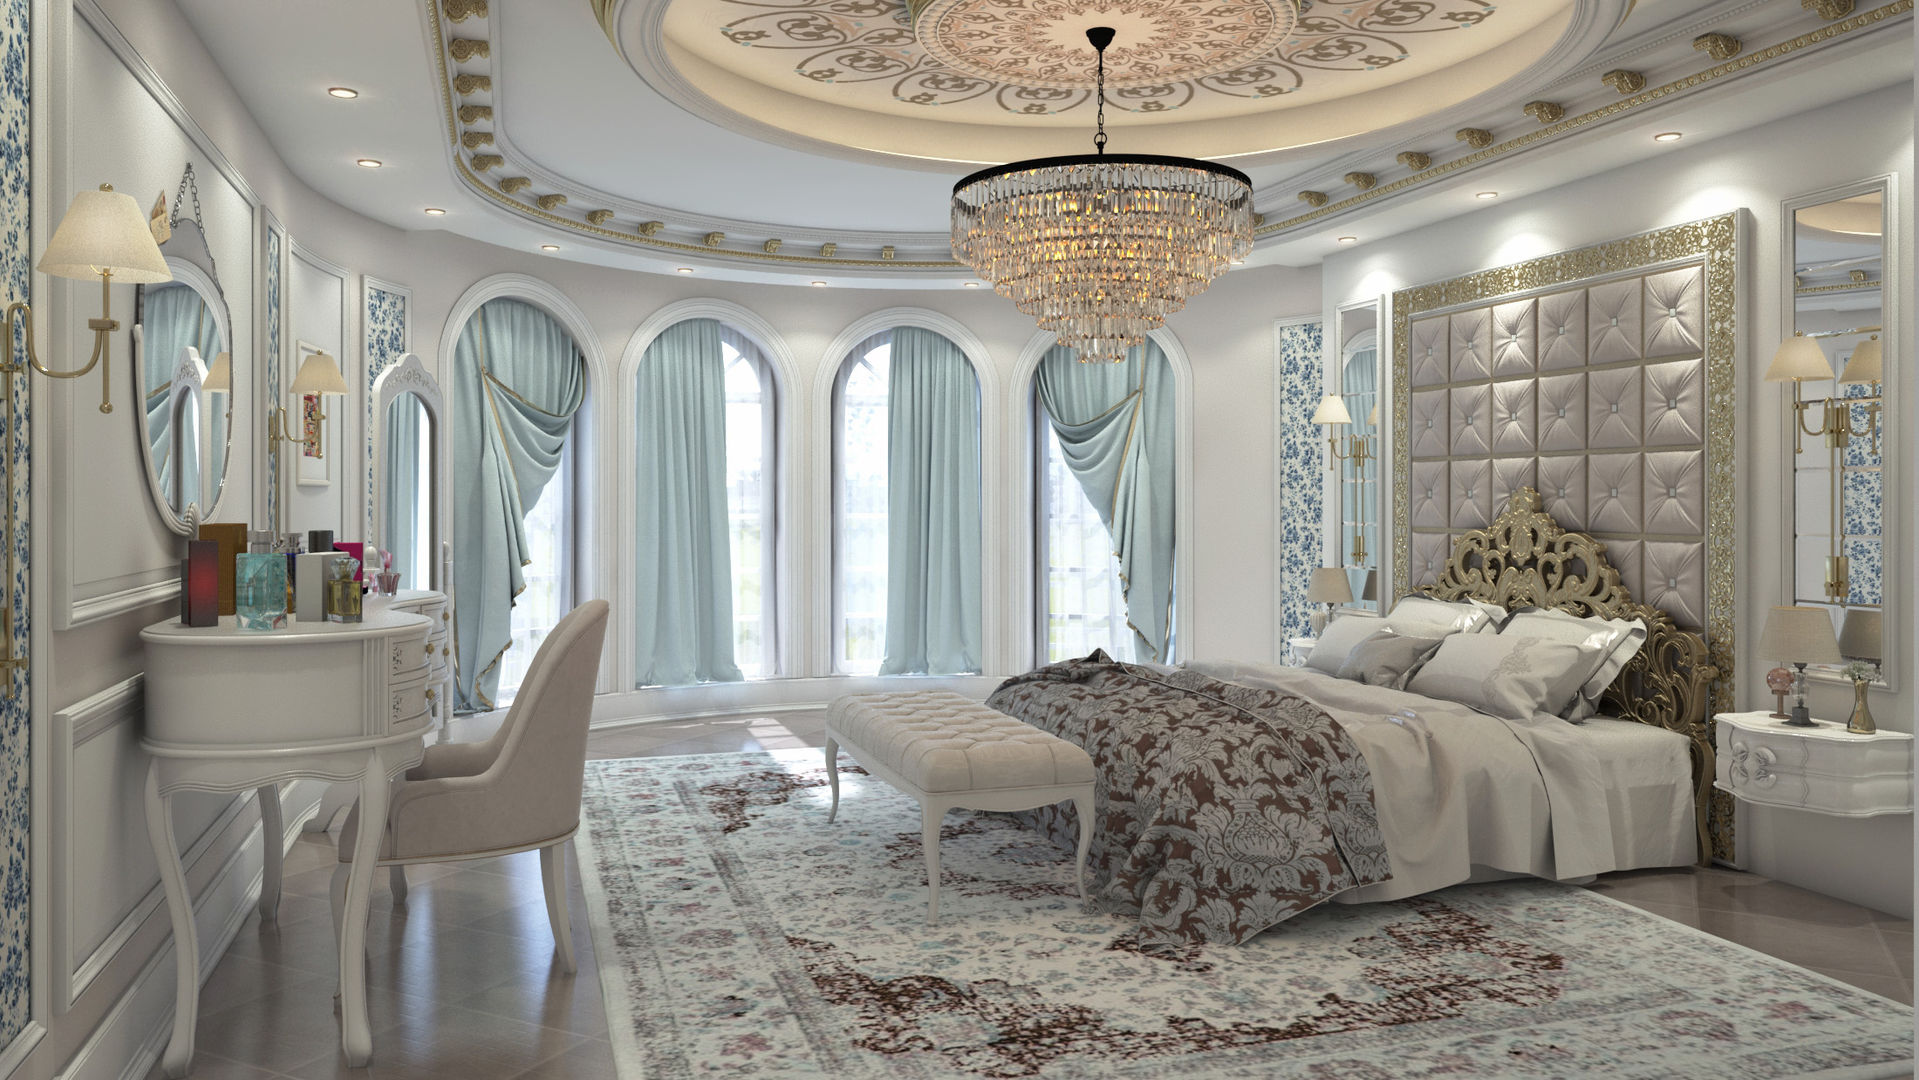 Classic Bedroom, Rêny Rêny 클래식스타일 침실